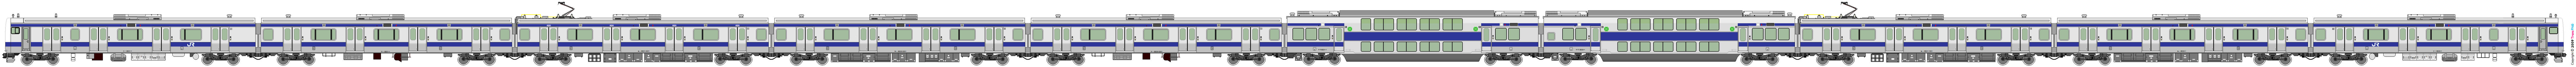 5004 - [5004] East Japan Railway 52162607363_aae5daff6f_o